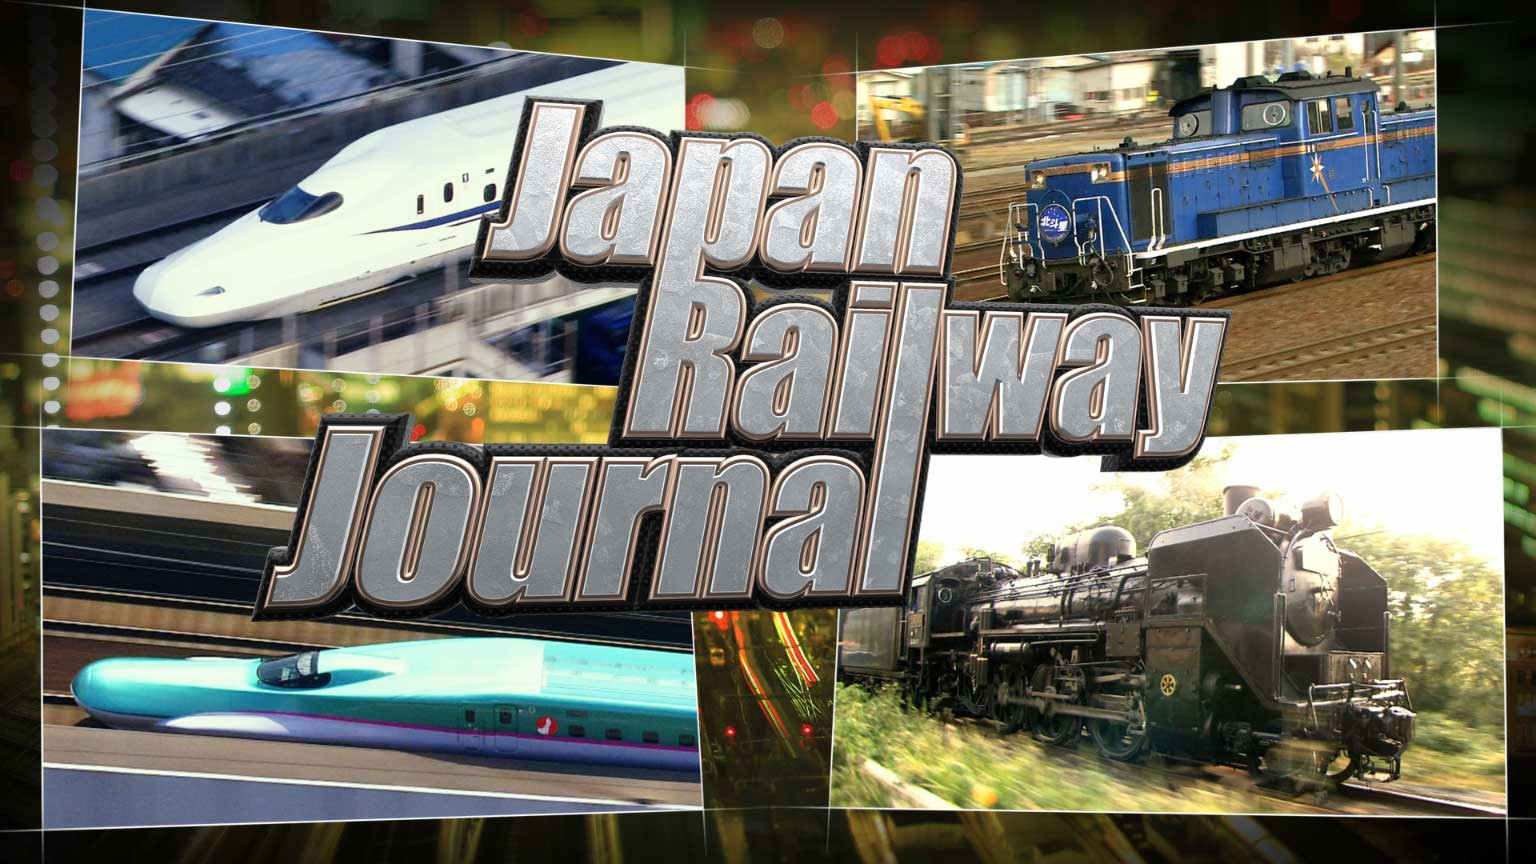 जापान रेलवे जरनल
Japan Railway Journal